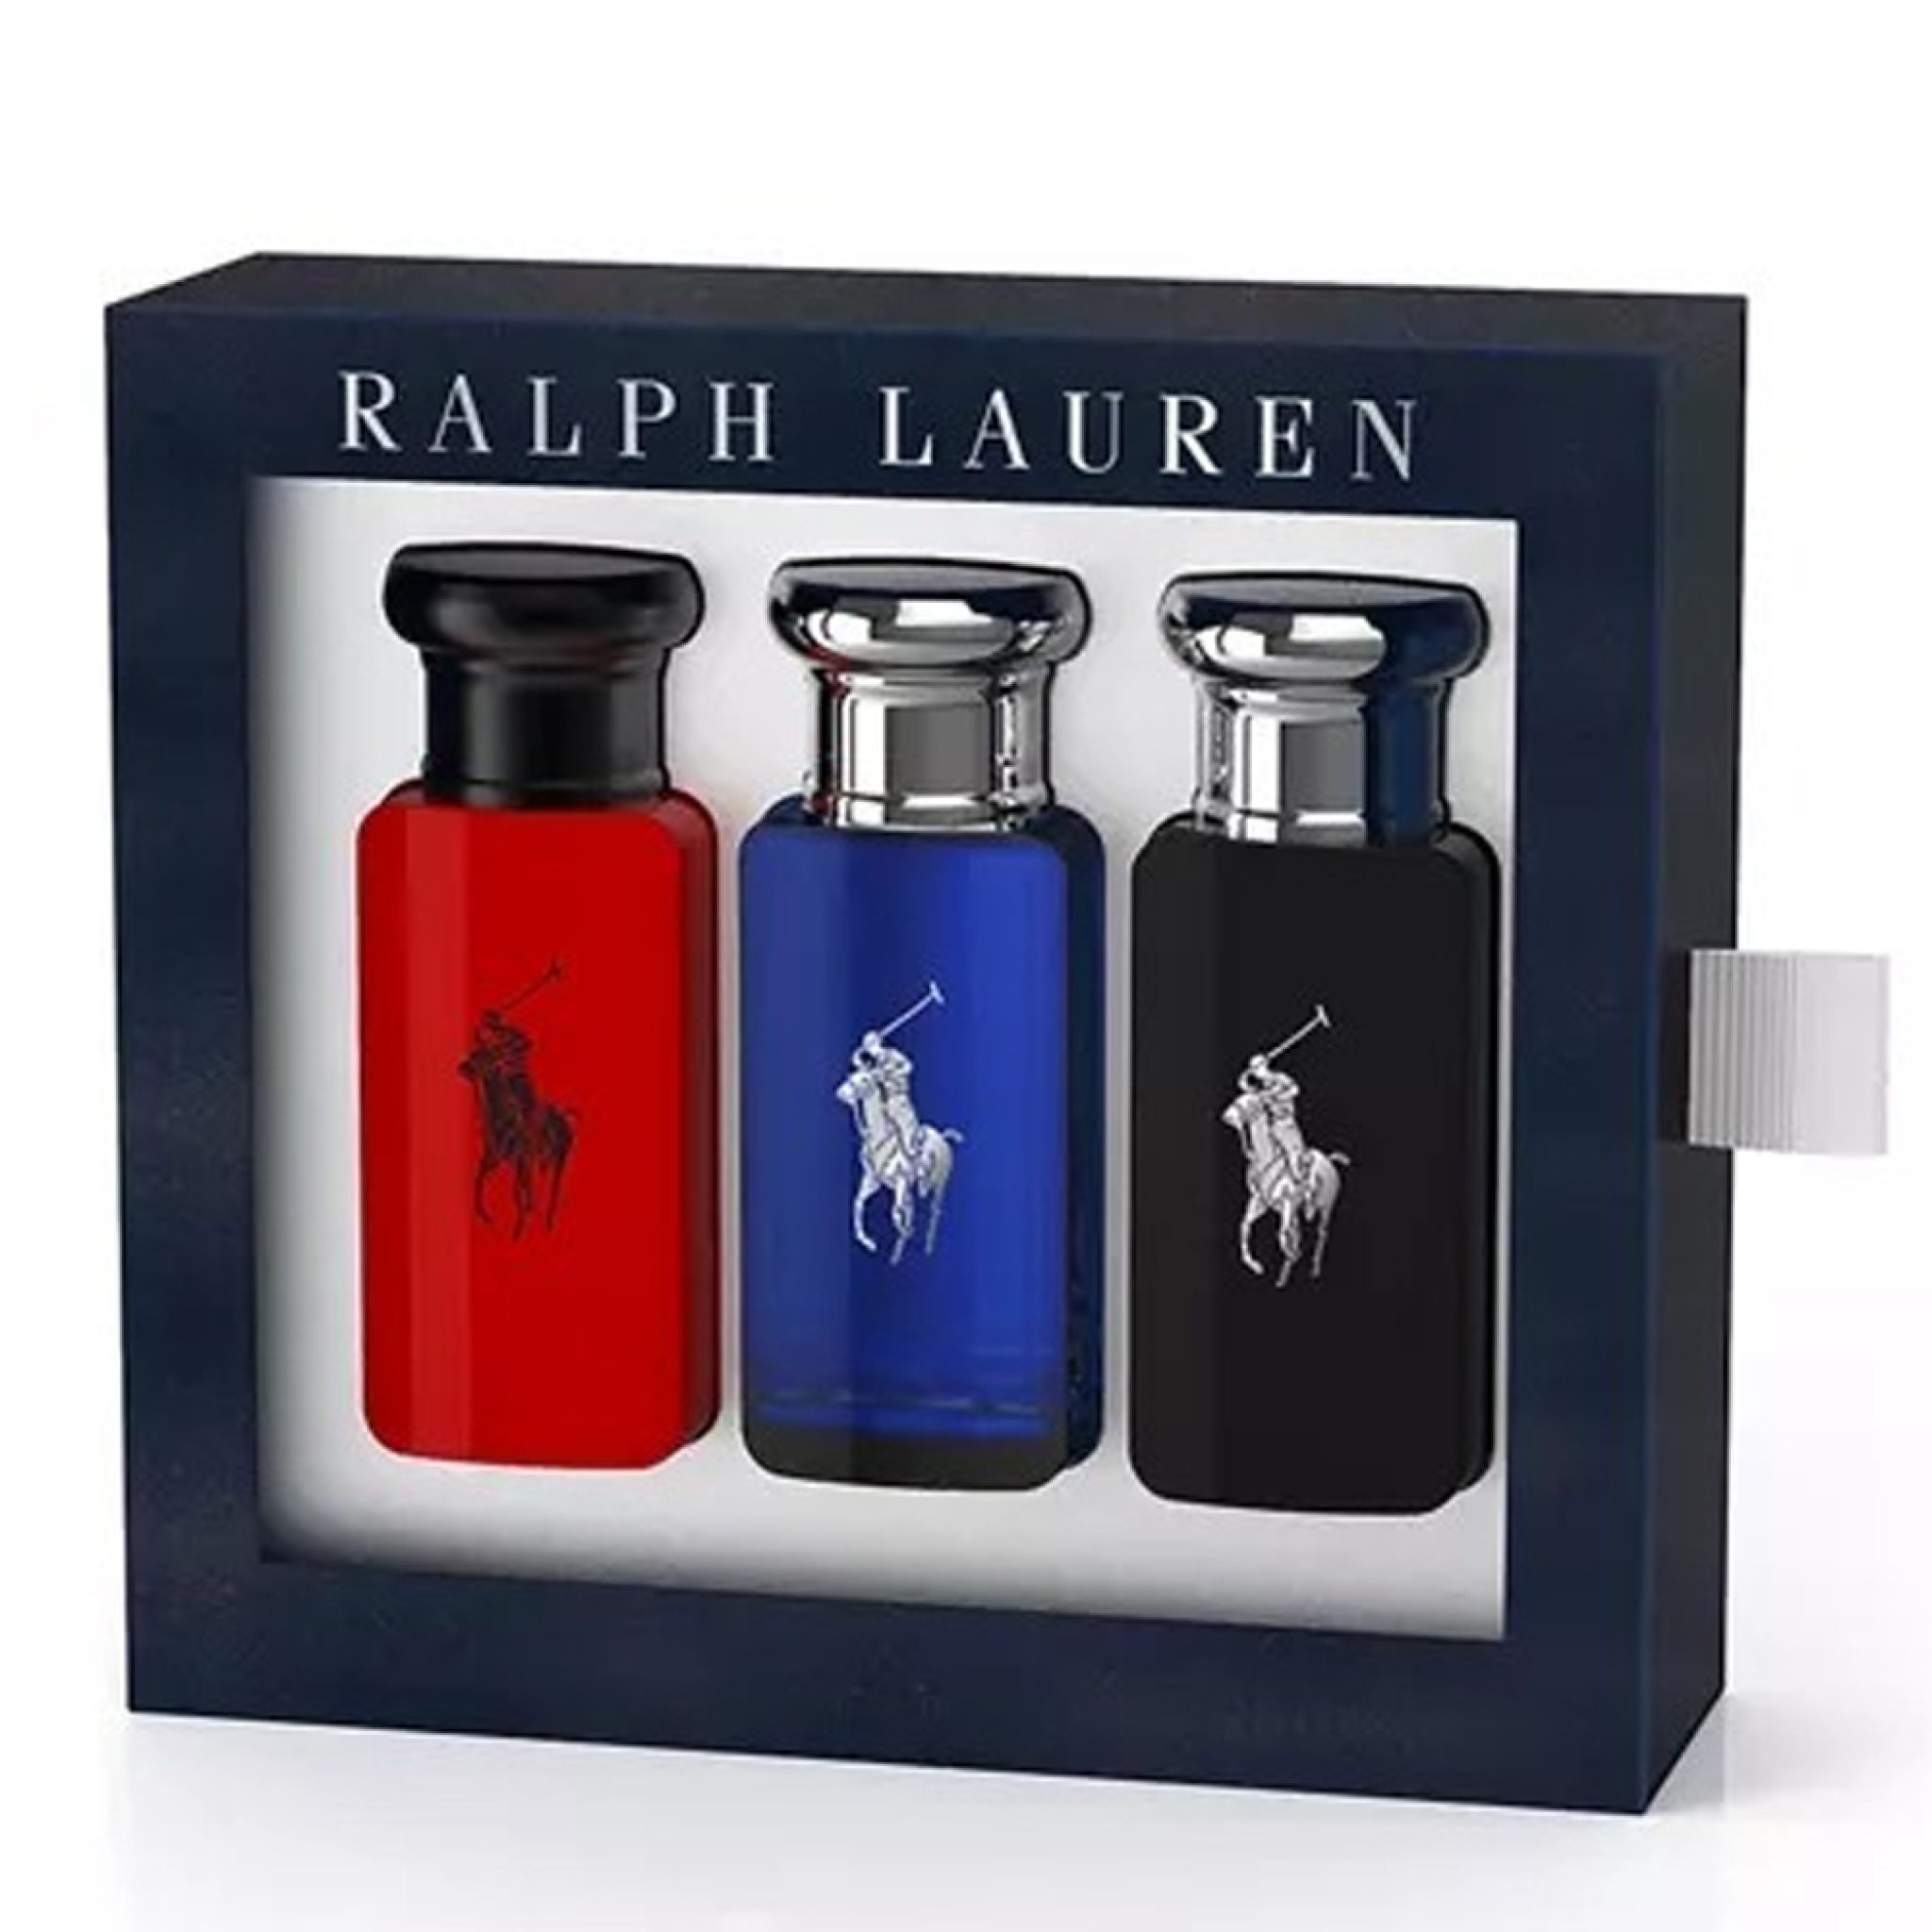 ralph-lauren-eau-de-toilette-3x30ml-polo-blue-polo-black-polo-red-set